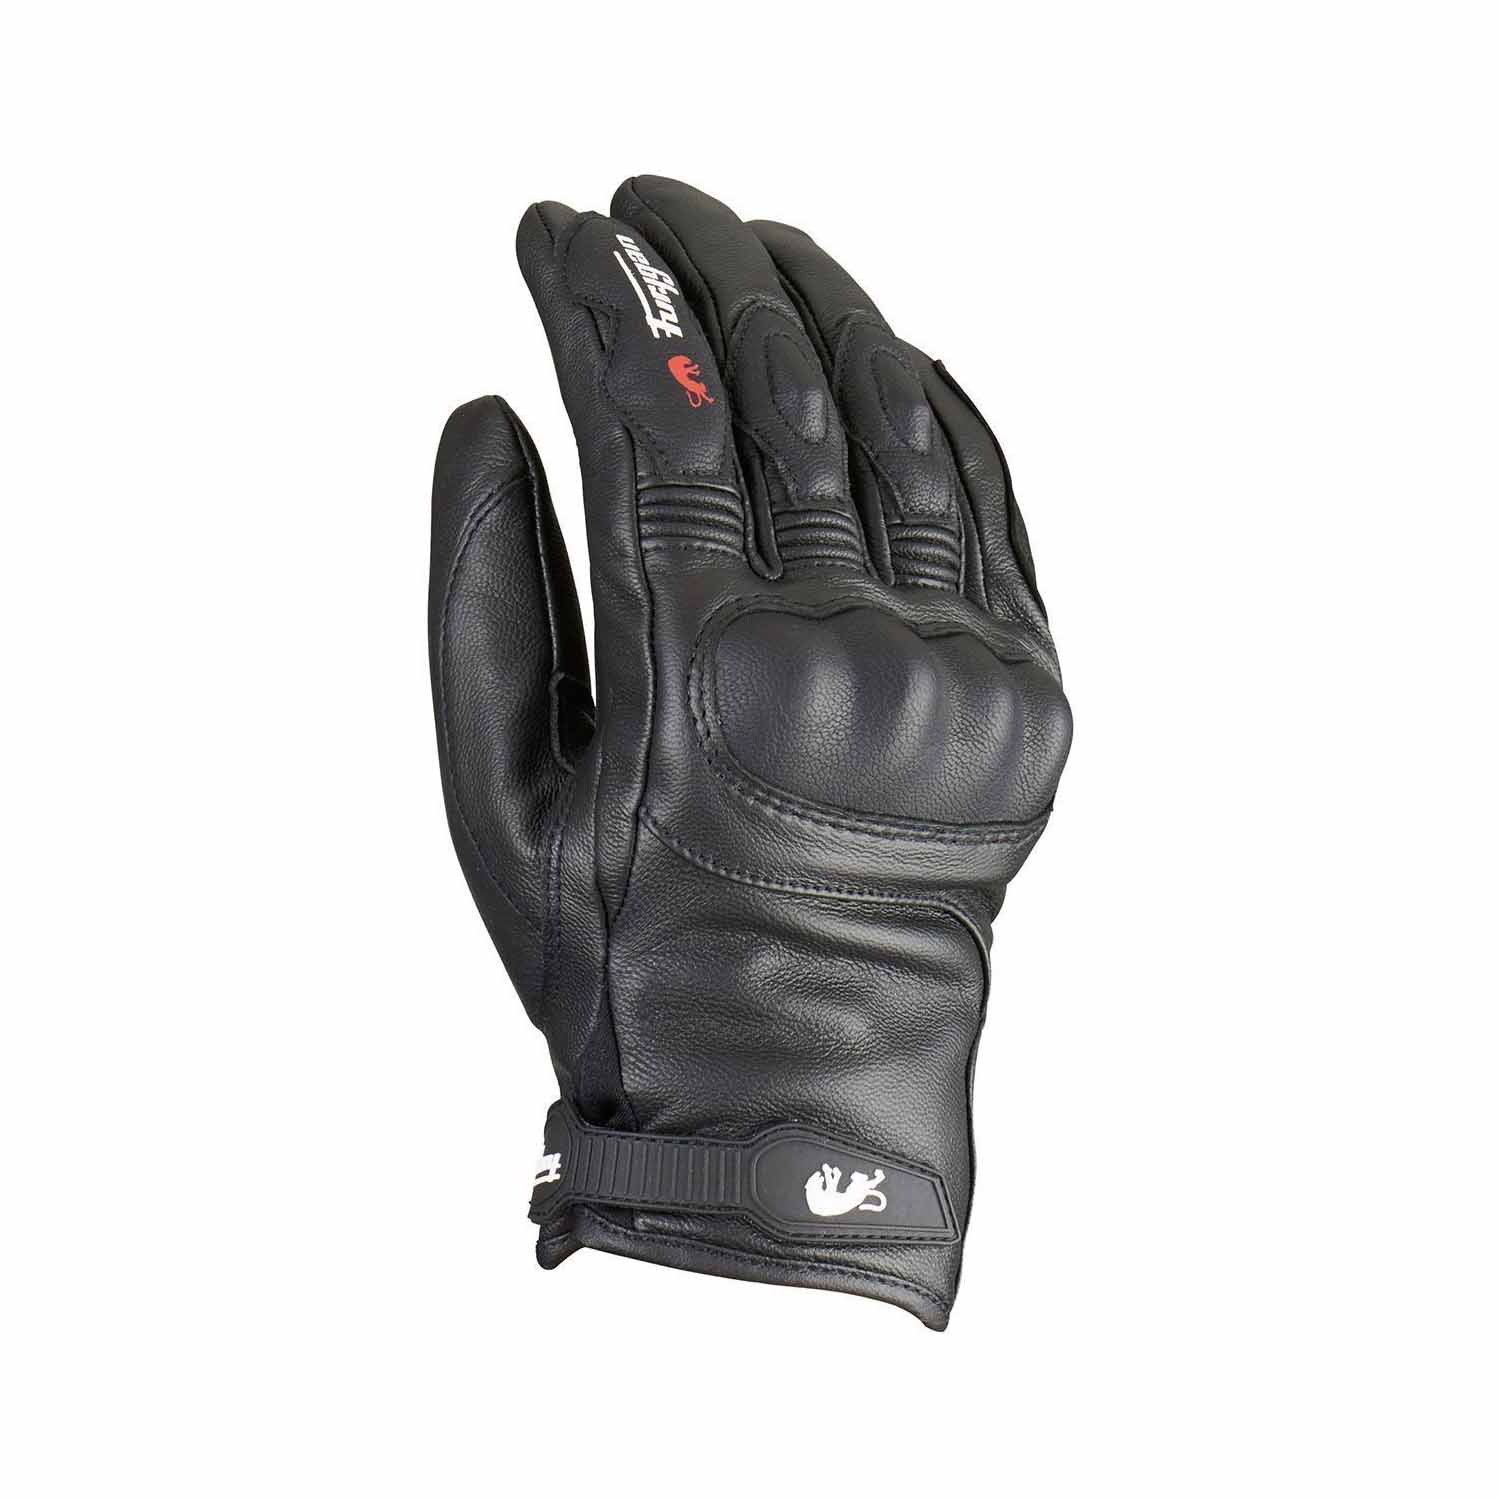 Image of Furygan Gloves TD21 All Season Evo Black Size XL ID 3435980328504